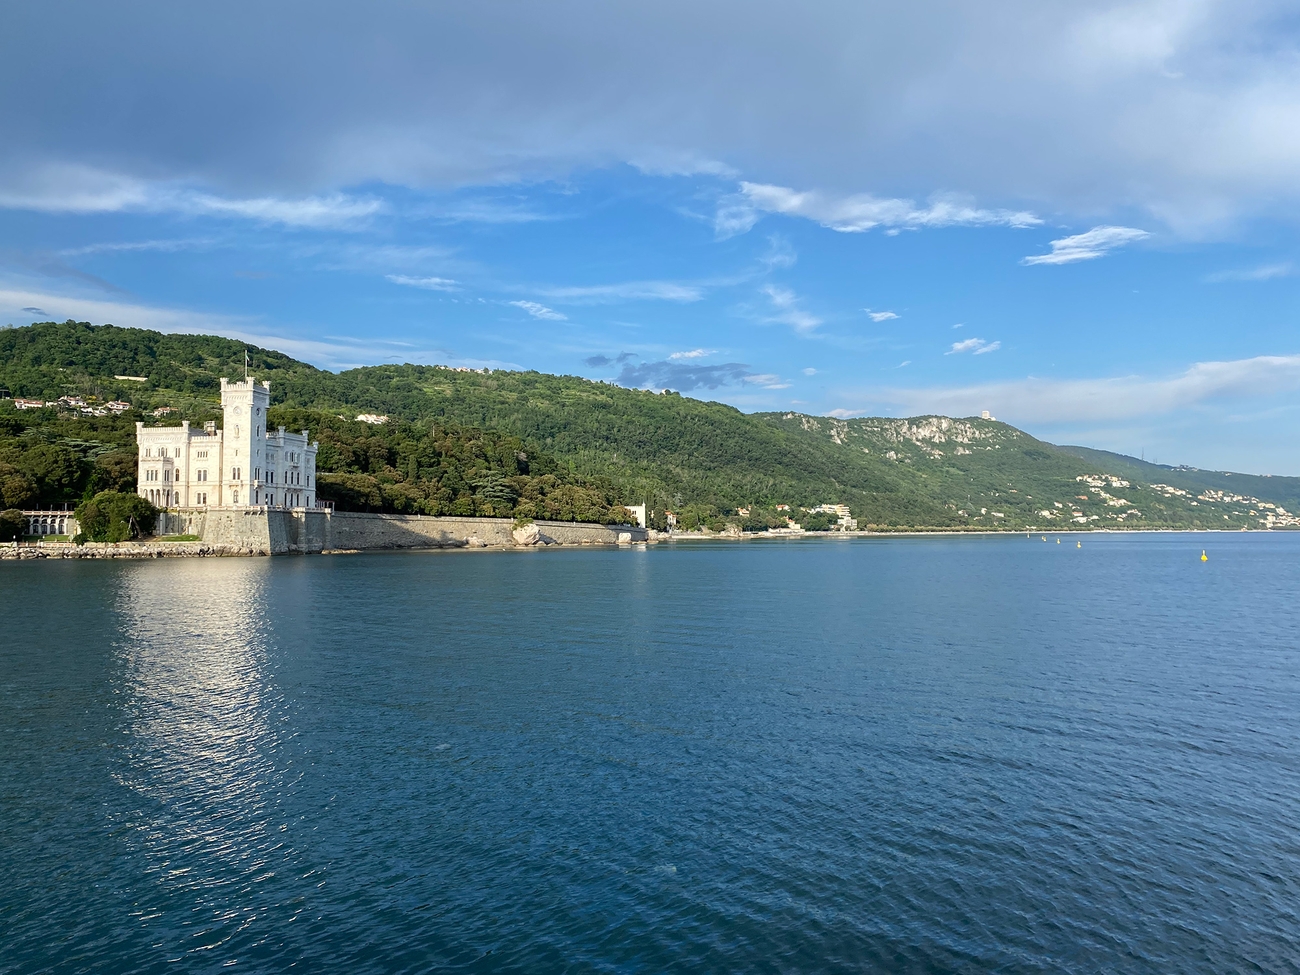 Castello di Miramare, Trieste